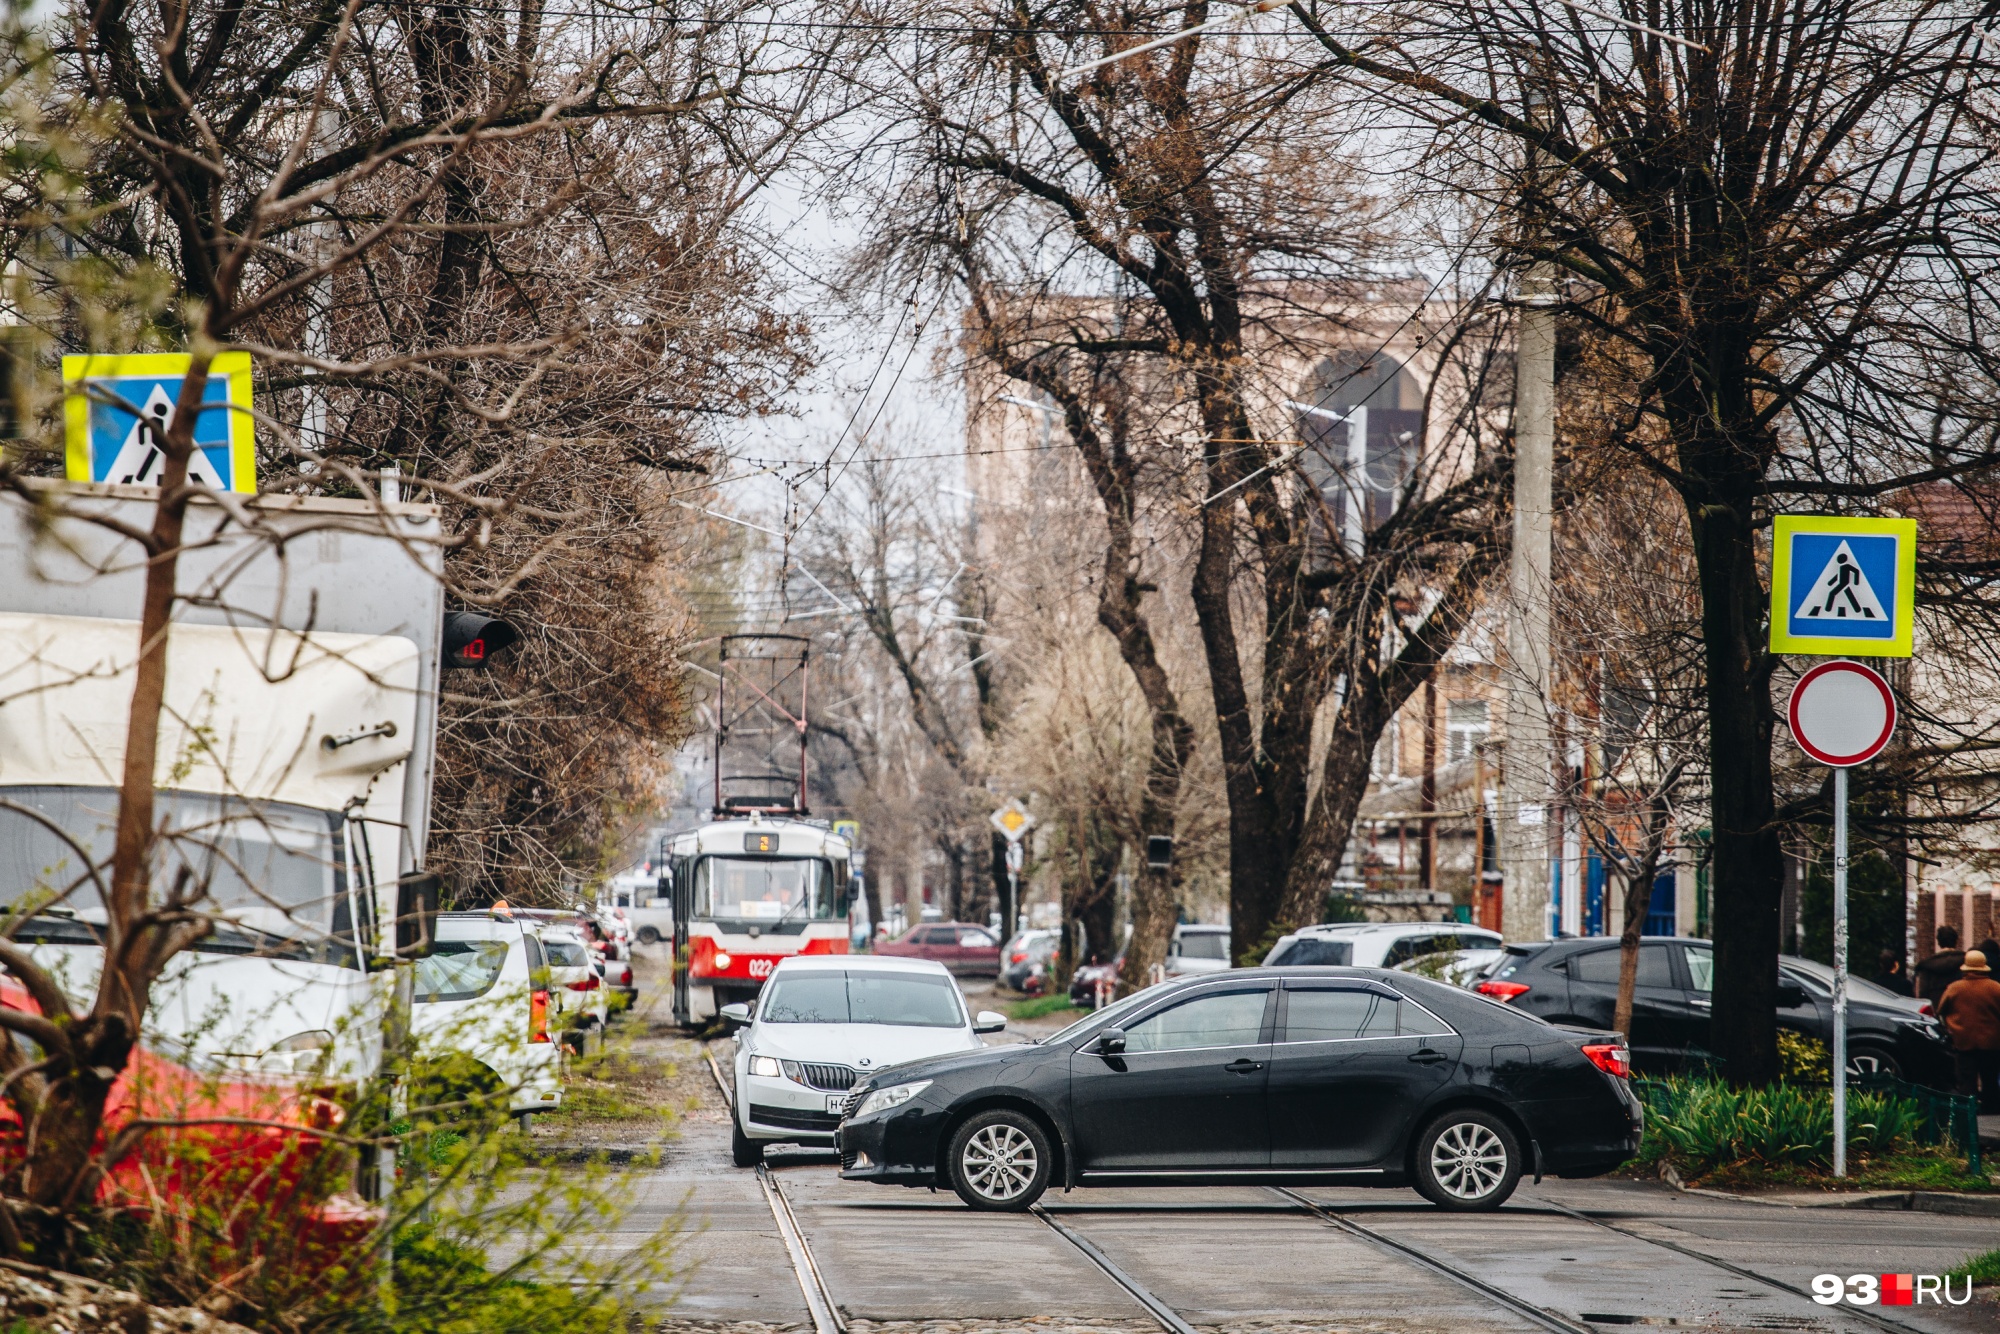 Урбанисты отмечают, что качество трамвайных путей в Краснодаре выше, чем в Москве